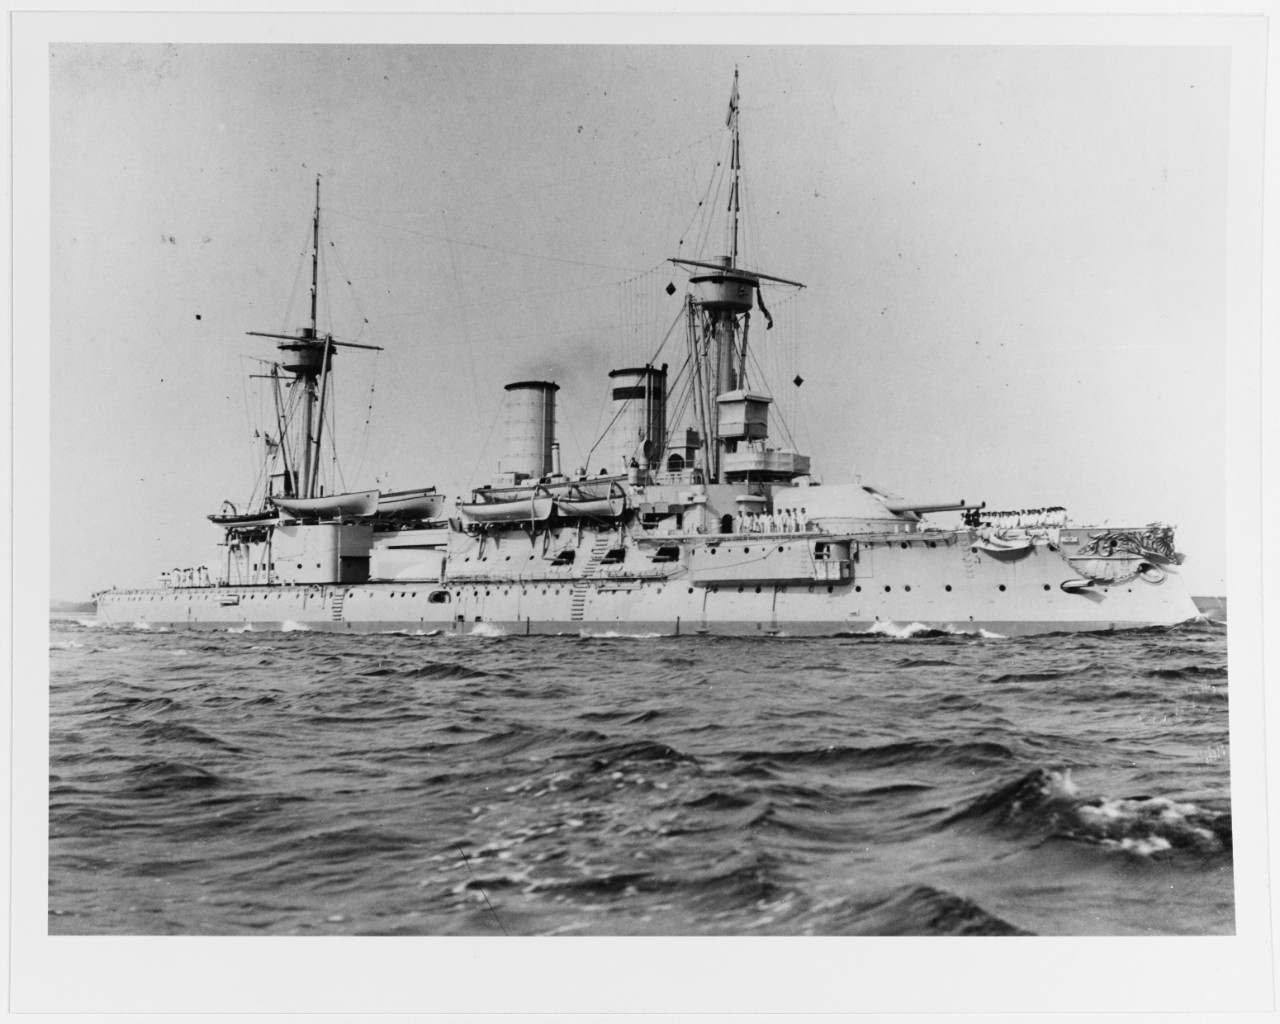 KURFURST FRIEDRICH WILHELM (German battleship, 1891-1915)